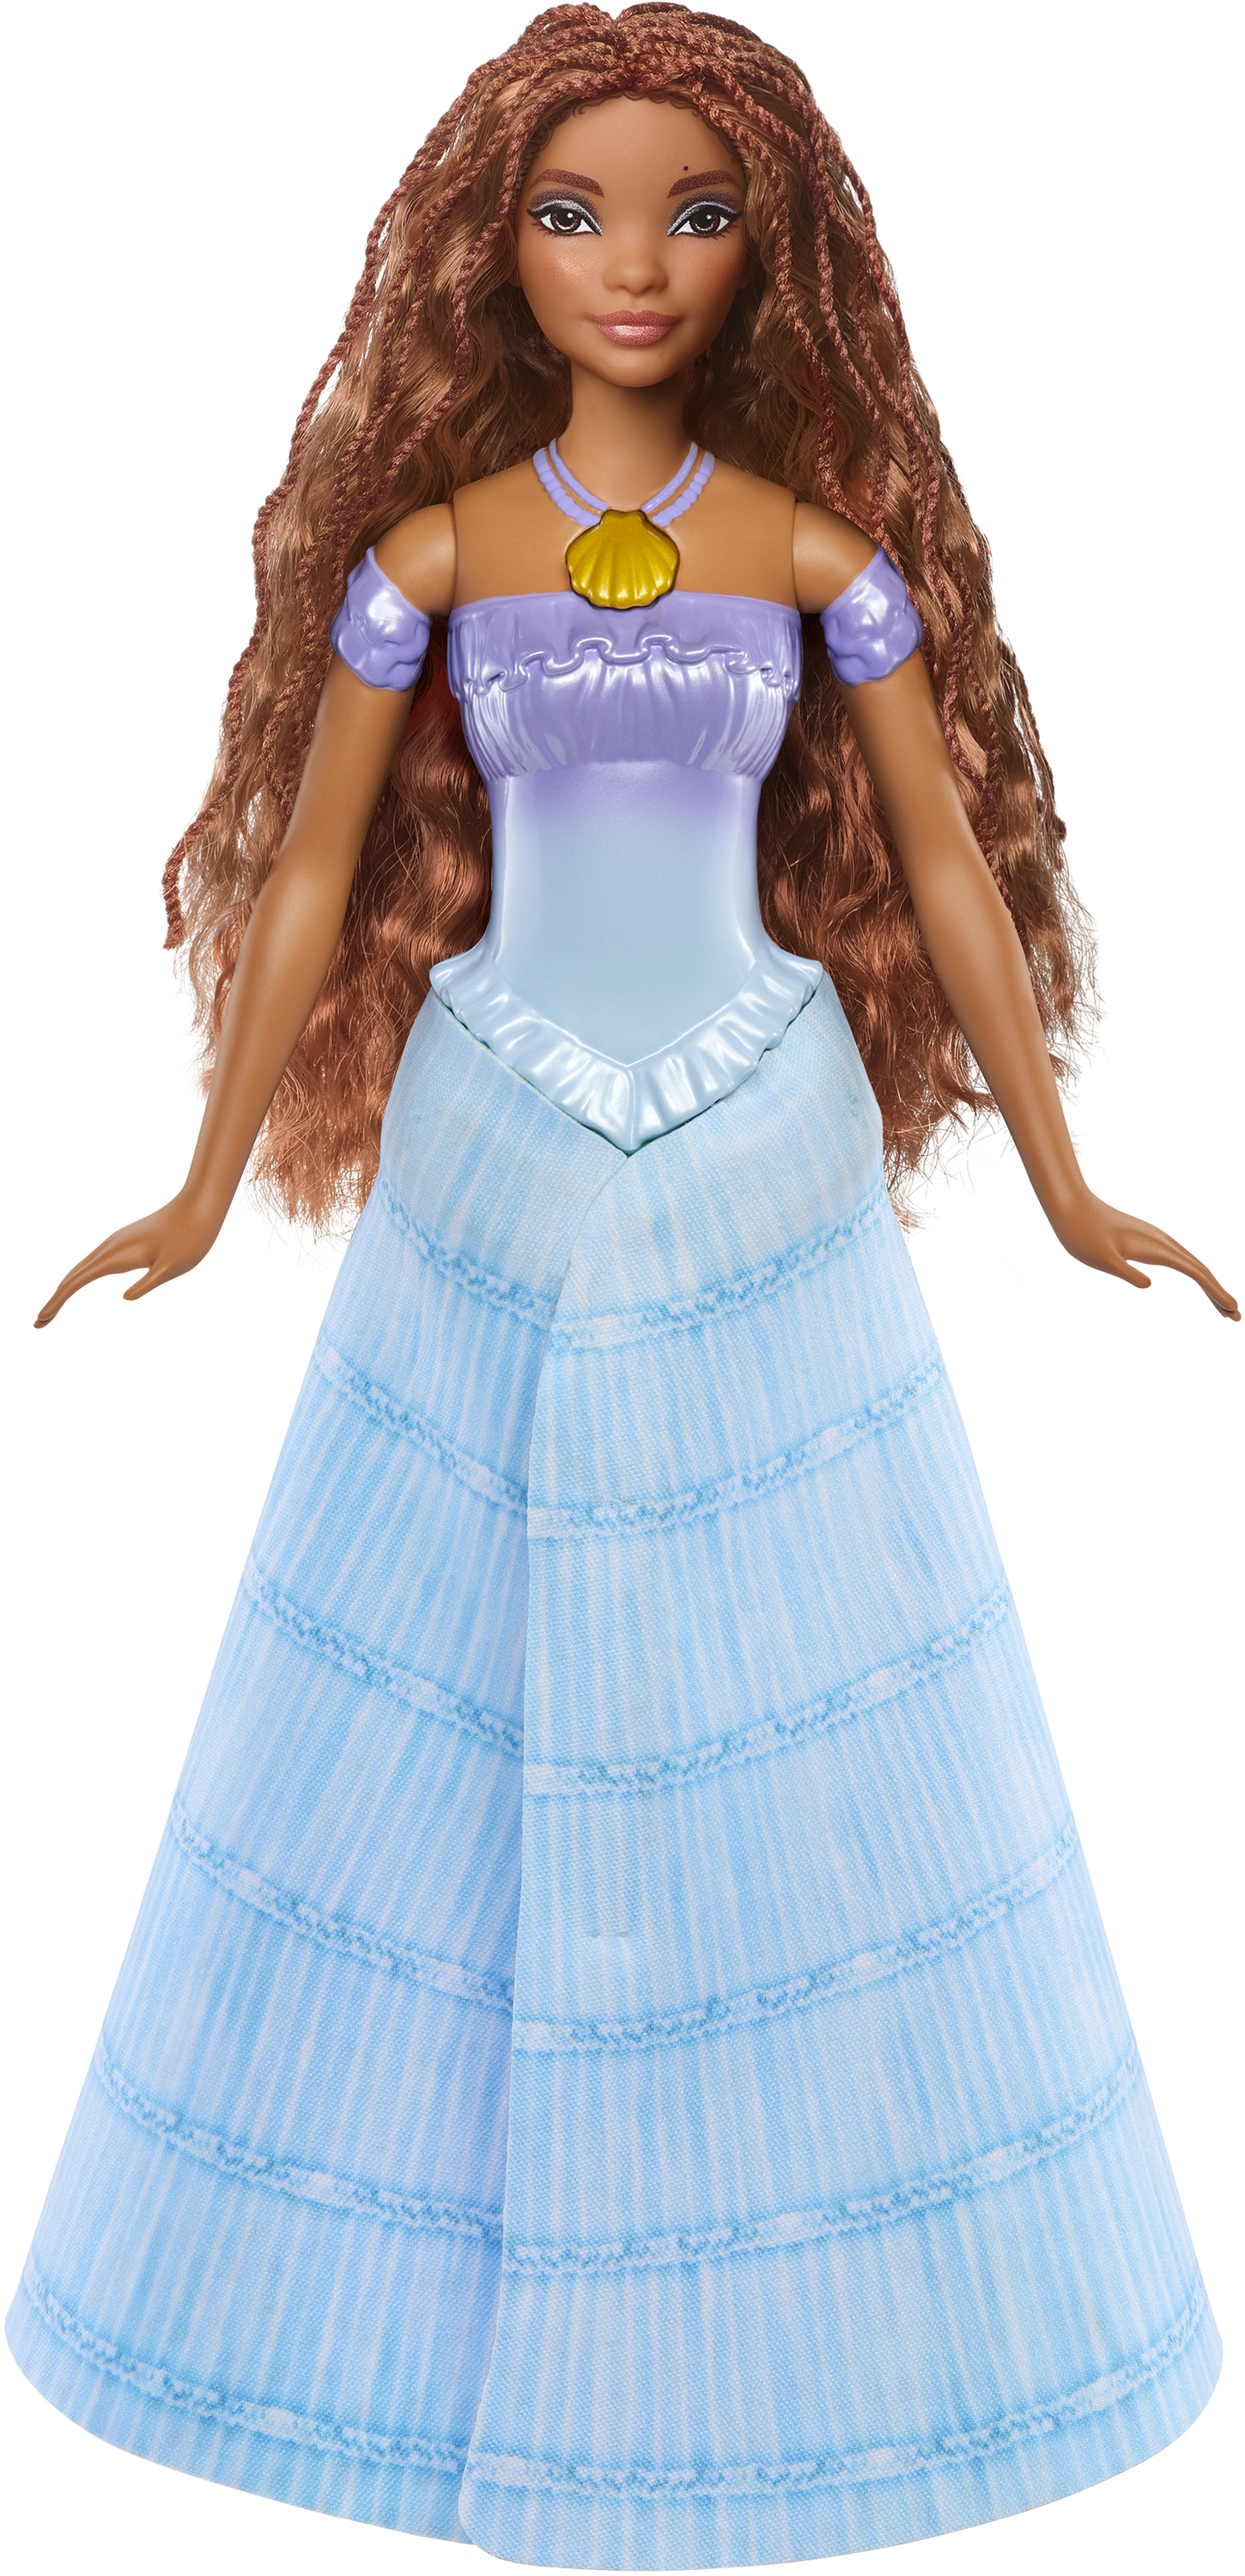 Disney Store Baguette magique lumineuse Princesse Ariel